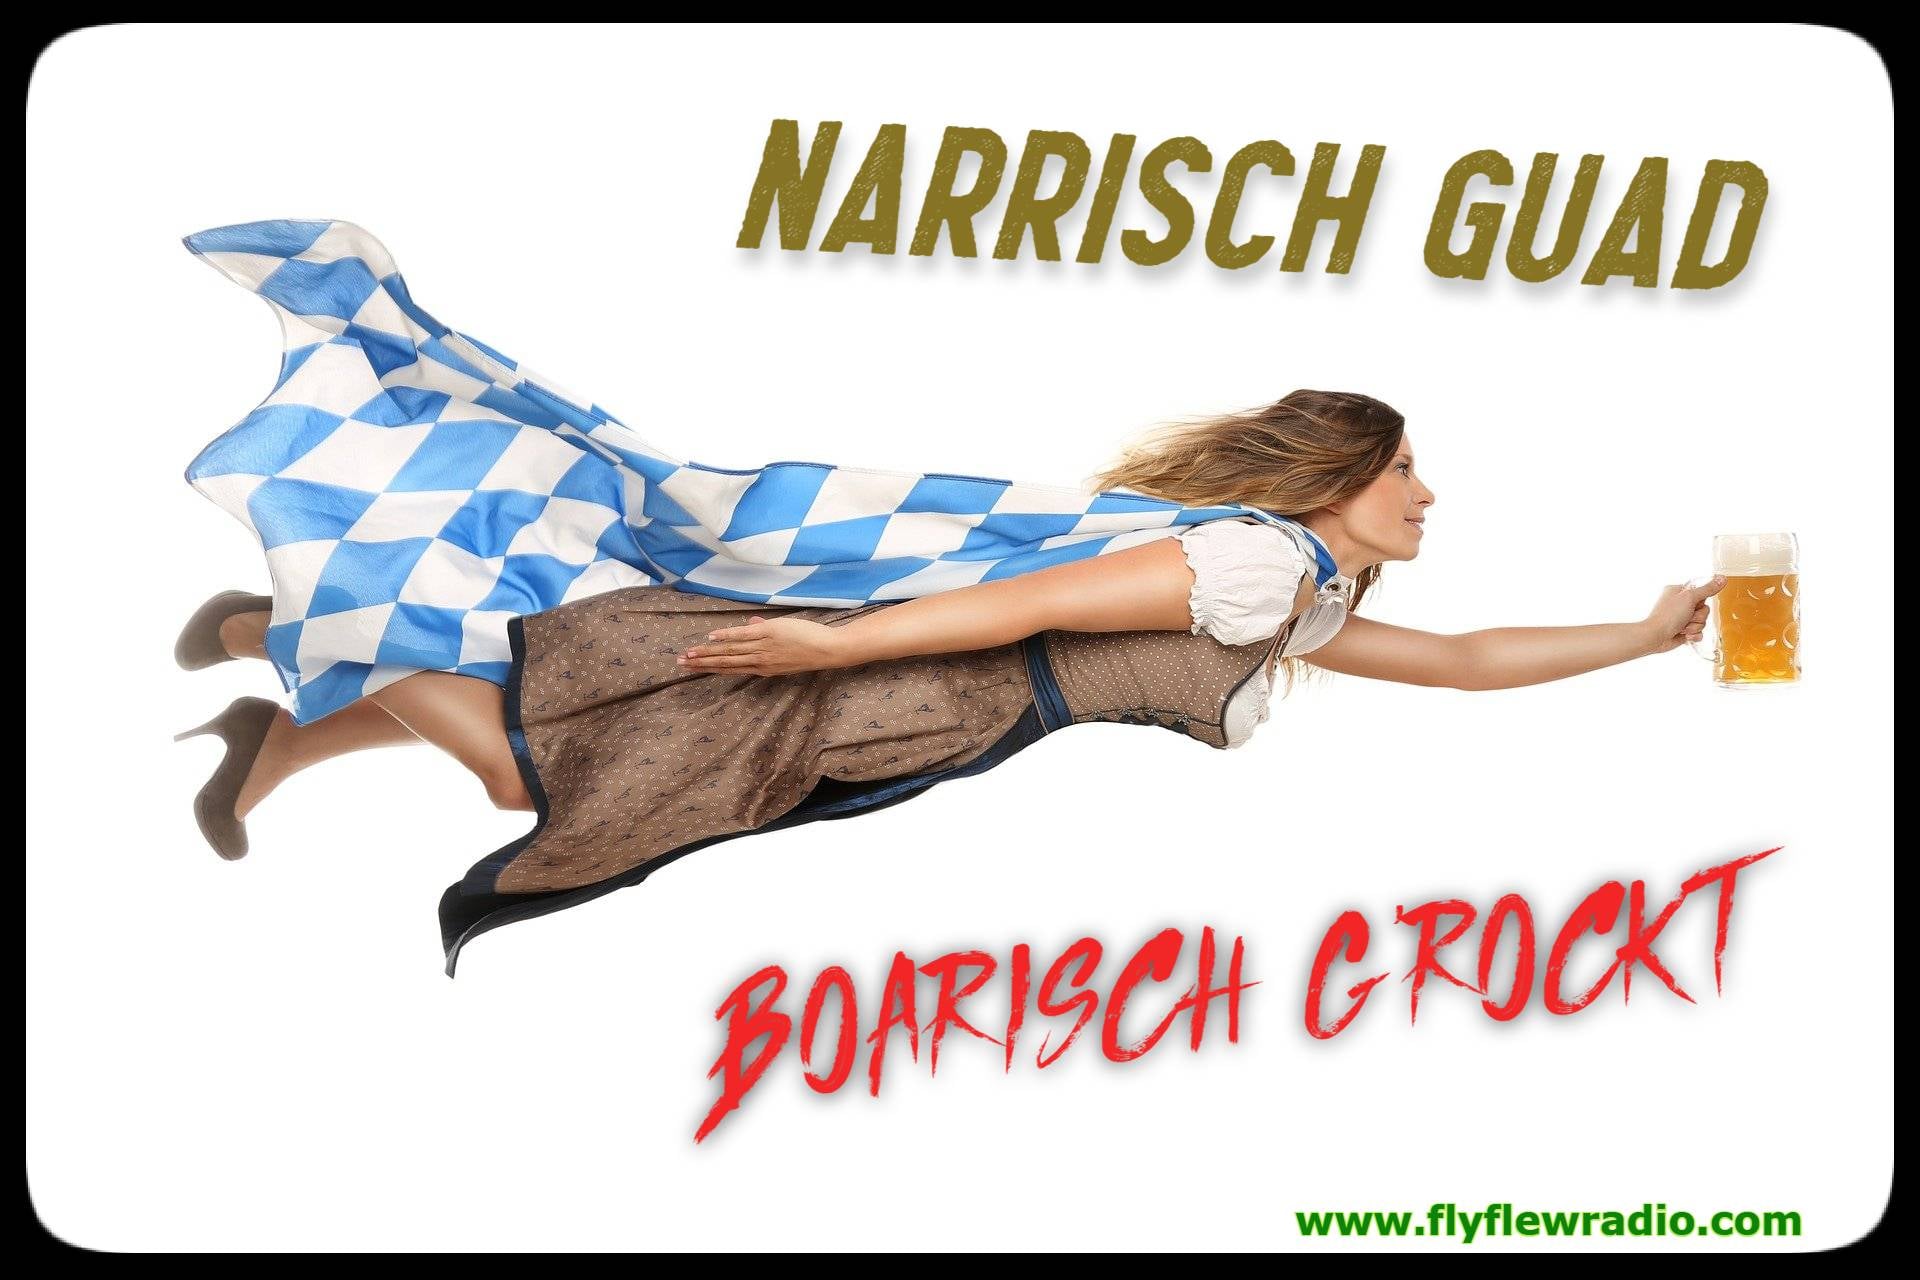 Narrisch Guad 
Boarisch G'rockt